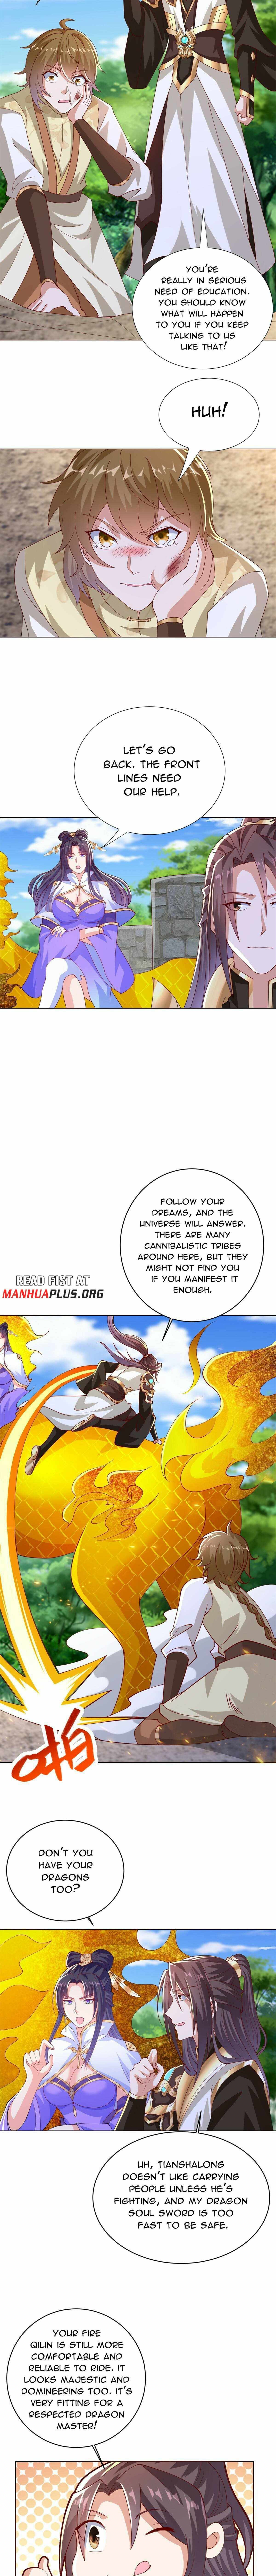 read Dragon Master Chapter 294 Manga Online Free at Mangabuddy, MangaNato,Manhwatop | MangaSo.com